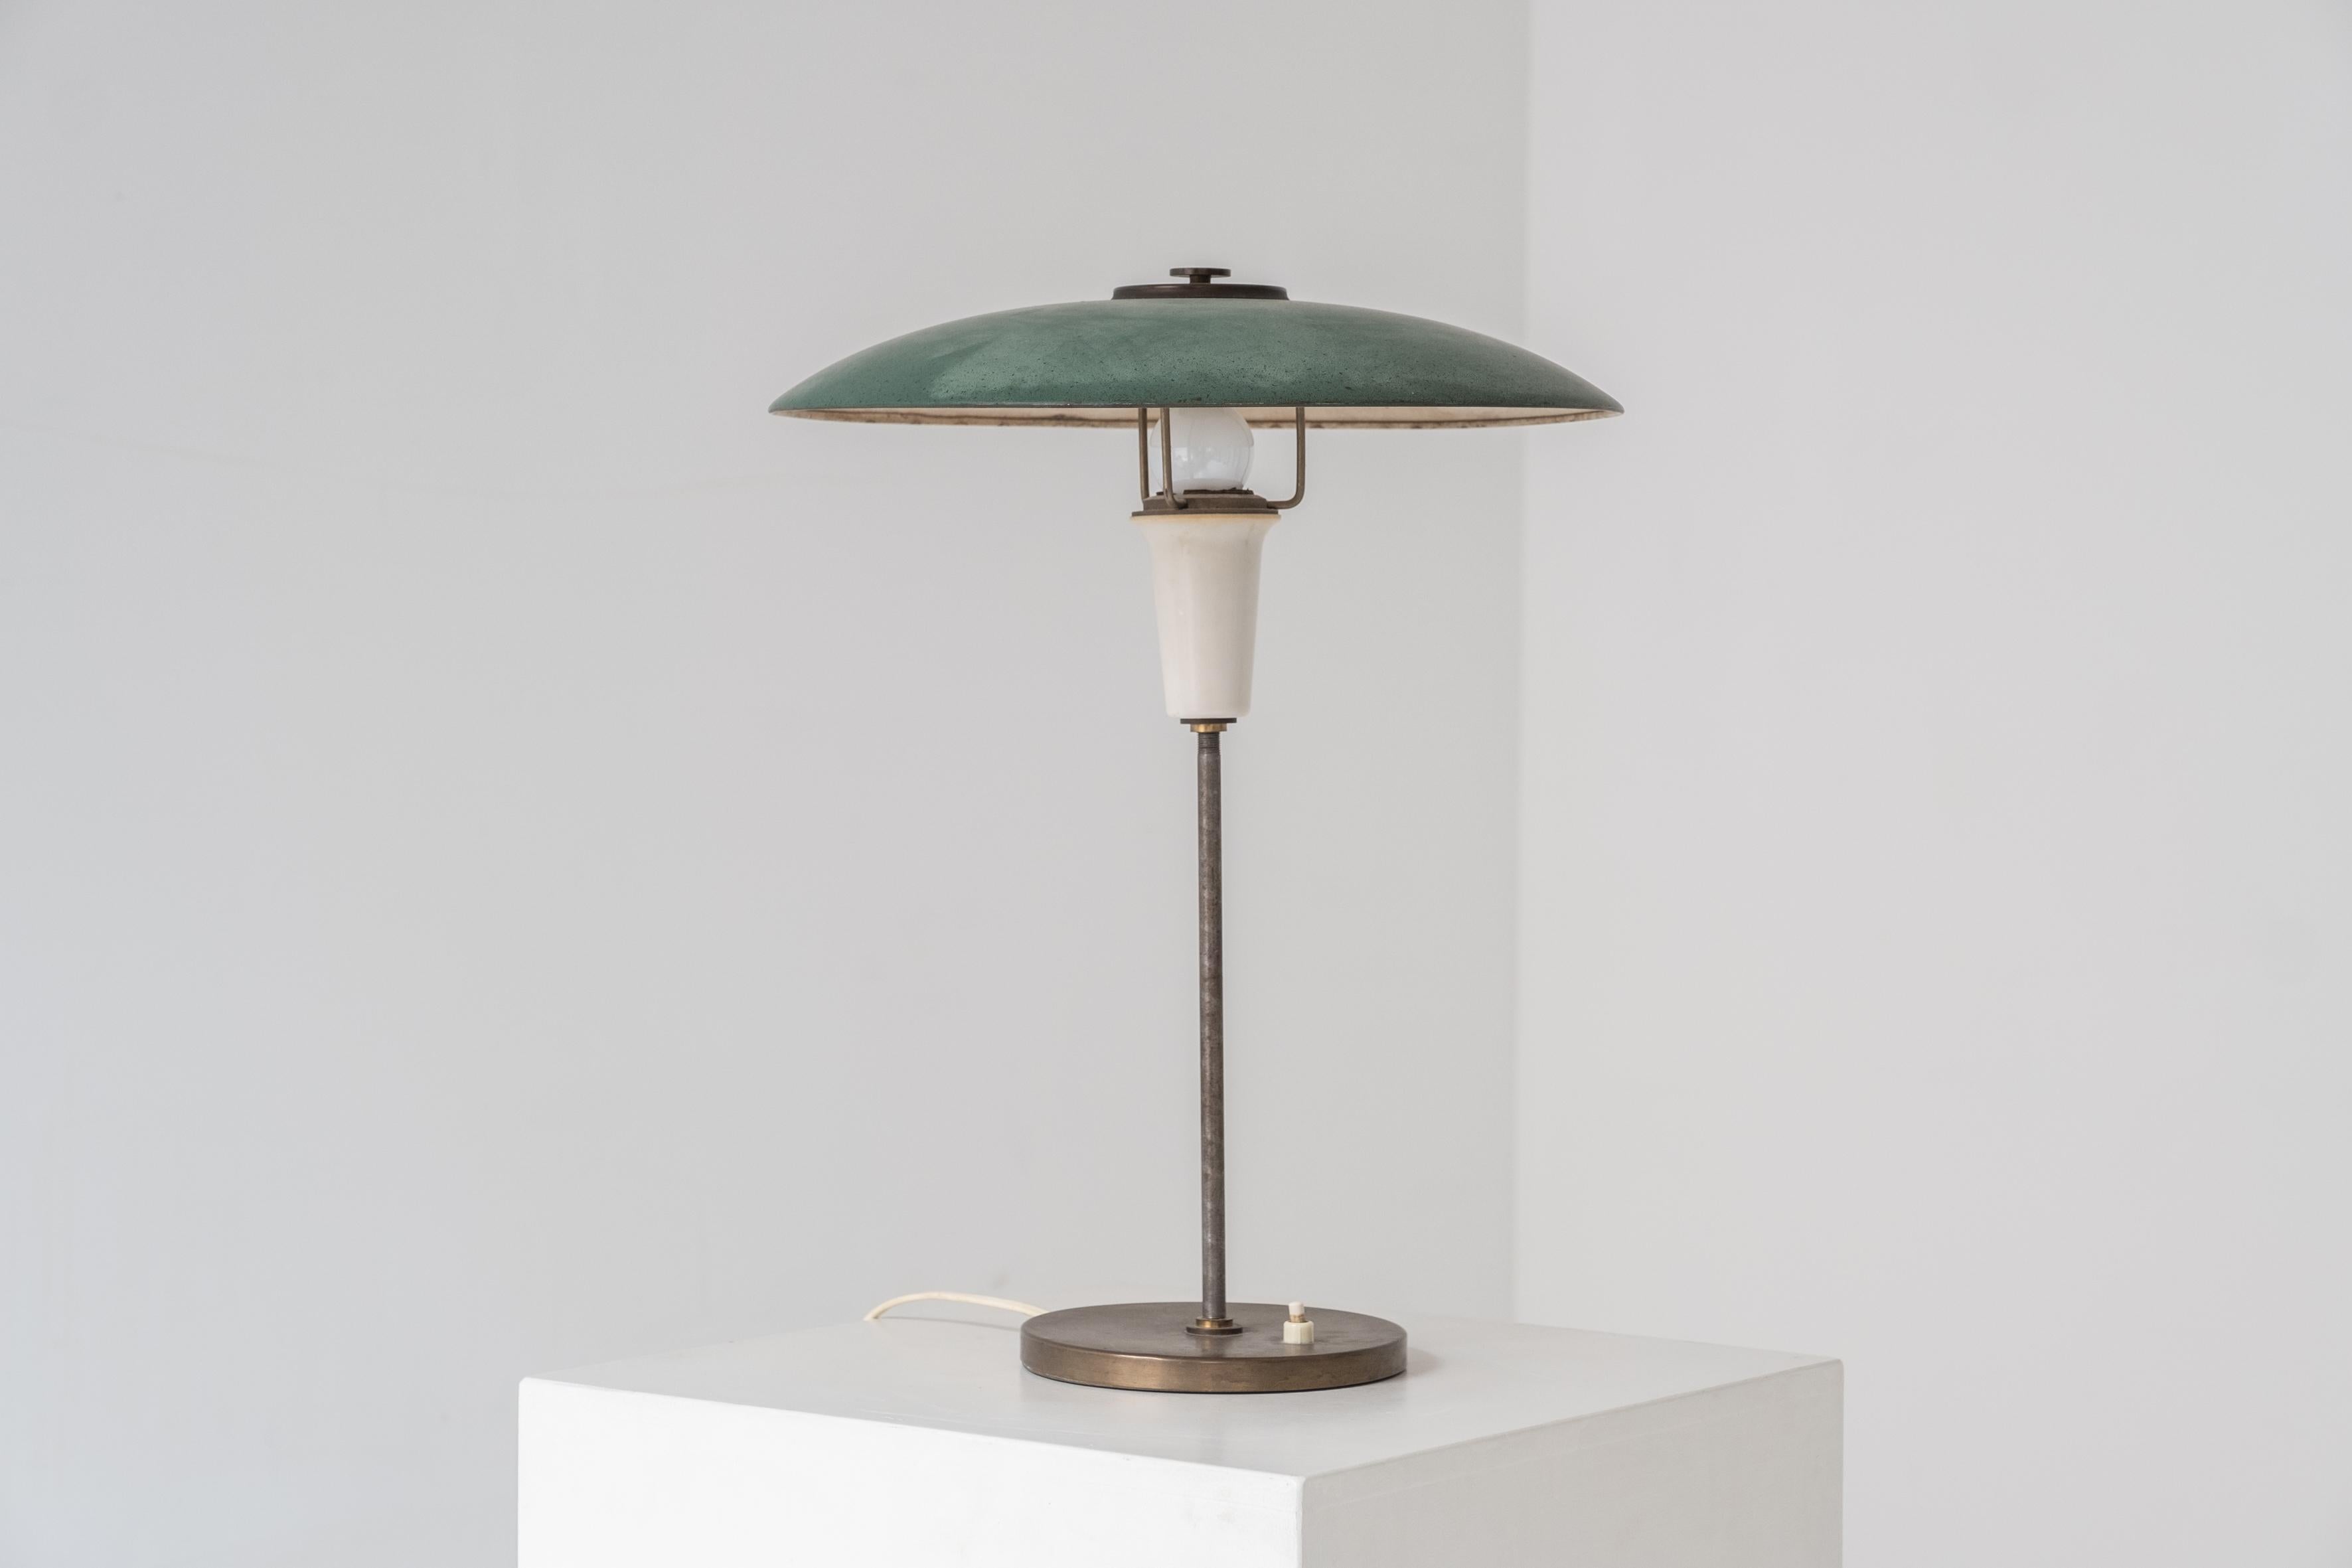 Charmante lampe de table du Danemark, conçue et fabriquée dans les années 1960. Cette lampe de table est en métal et présente une belle patine d'ensemble, en particulier sur l'abat-jour vert. Modernité danoise classique.